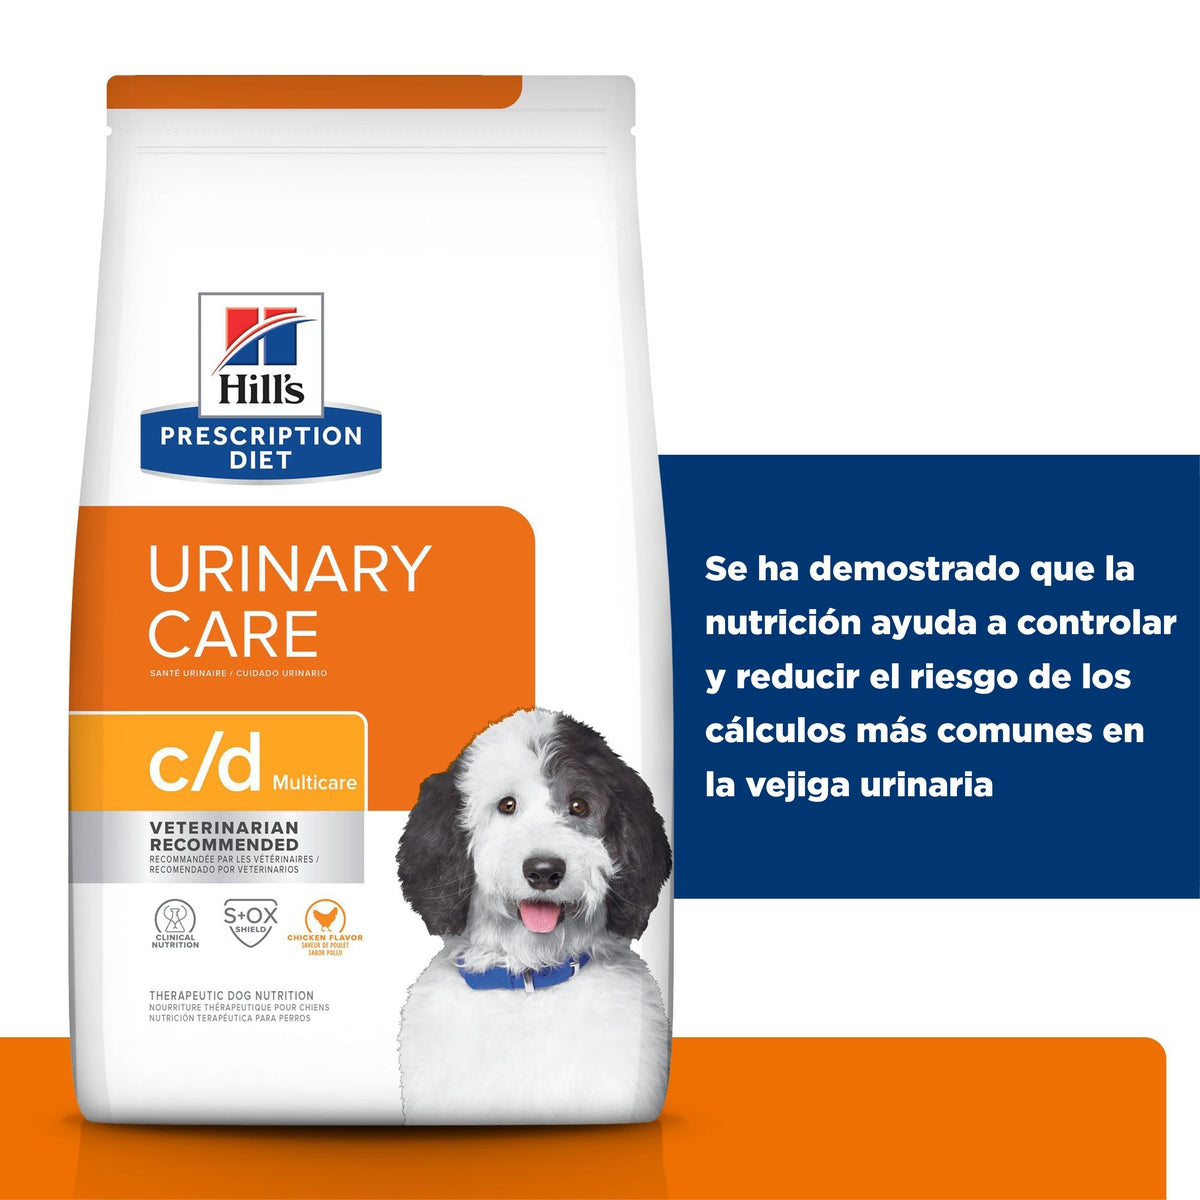 Hill's Prescription Diet c/d Multicare Cuidado Urinario Alimento Seco para Perro